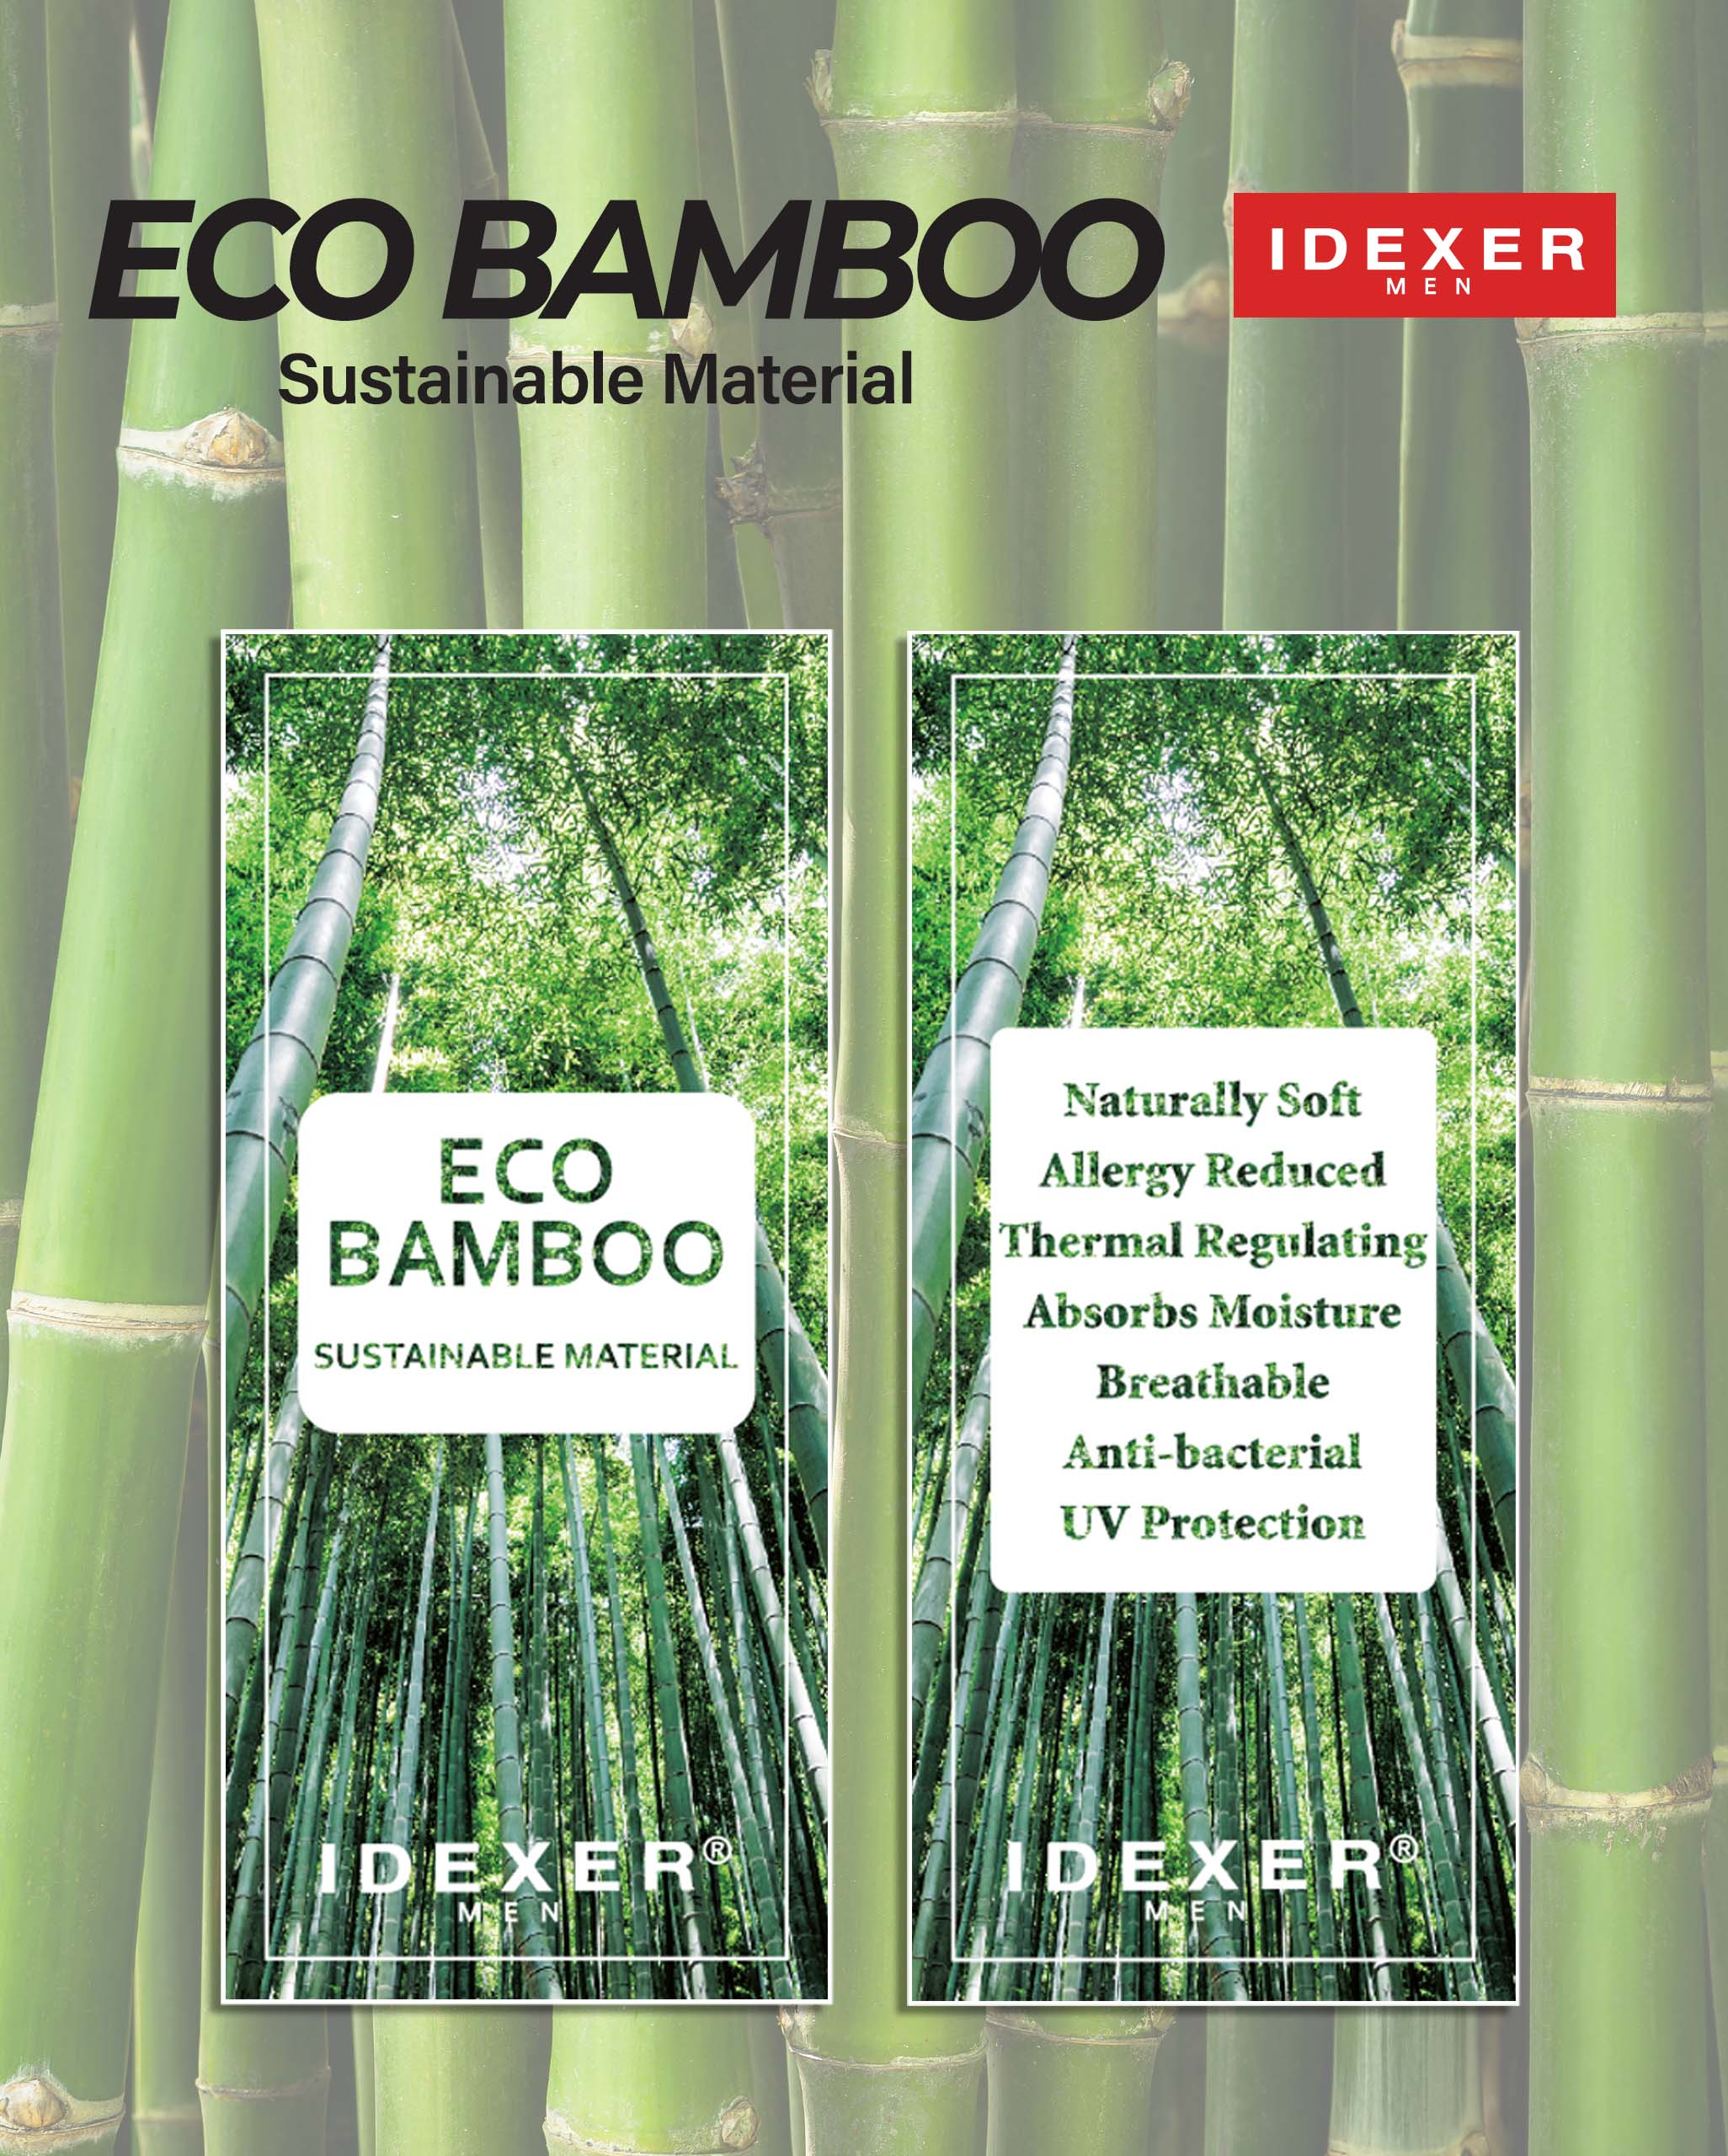 Idexer Eco Bamboo